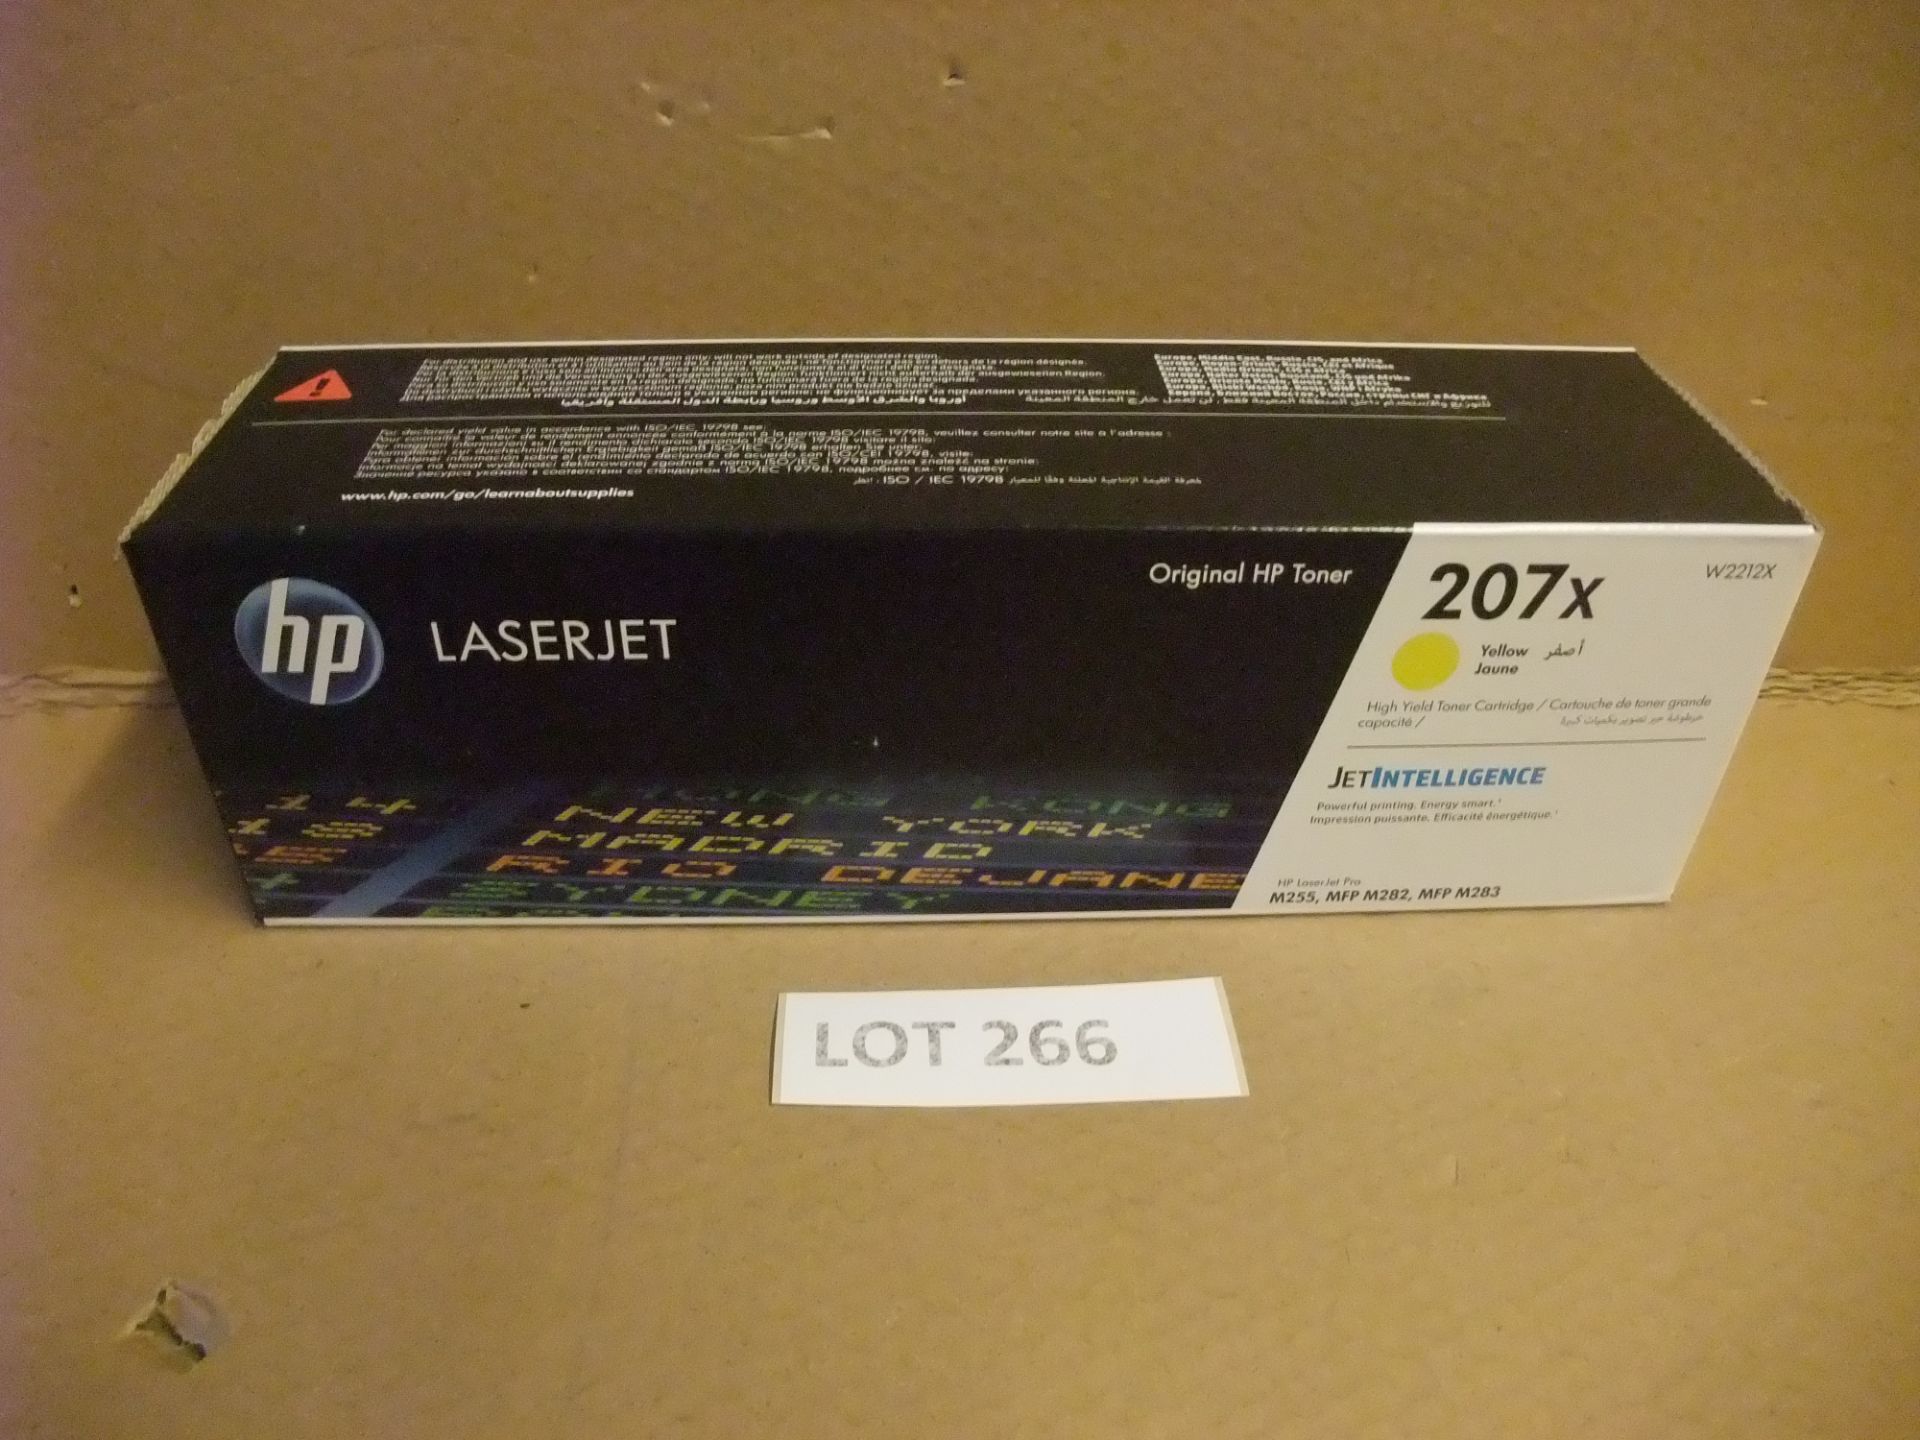 HP LaserJet Toner 207x (W2212X) - YELLOW - for HP LaserJet Pro M255, MFP M282, MFP M283Please read